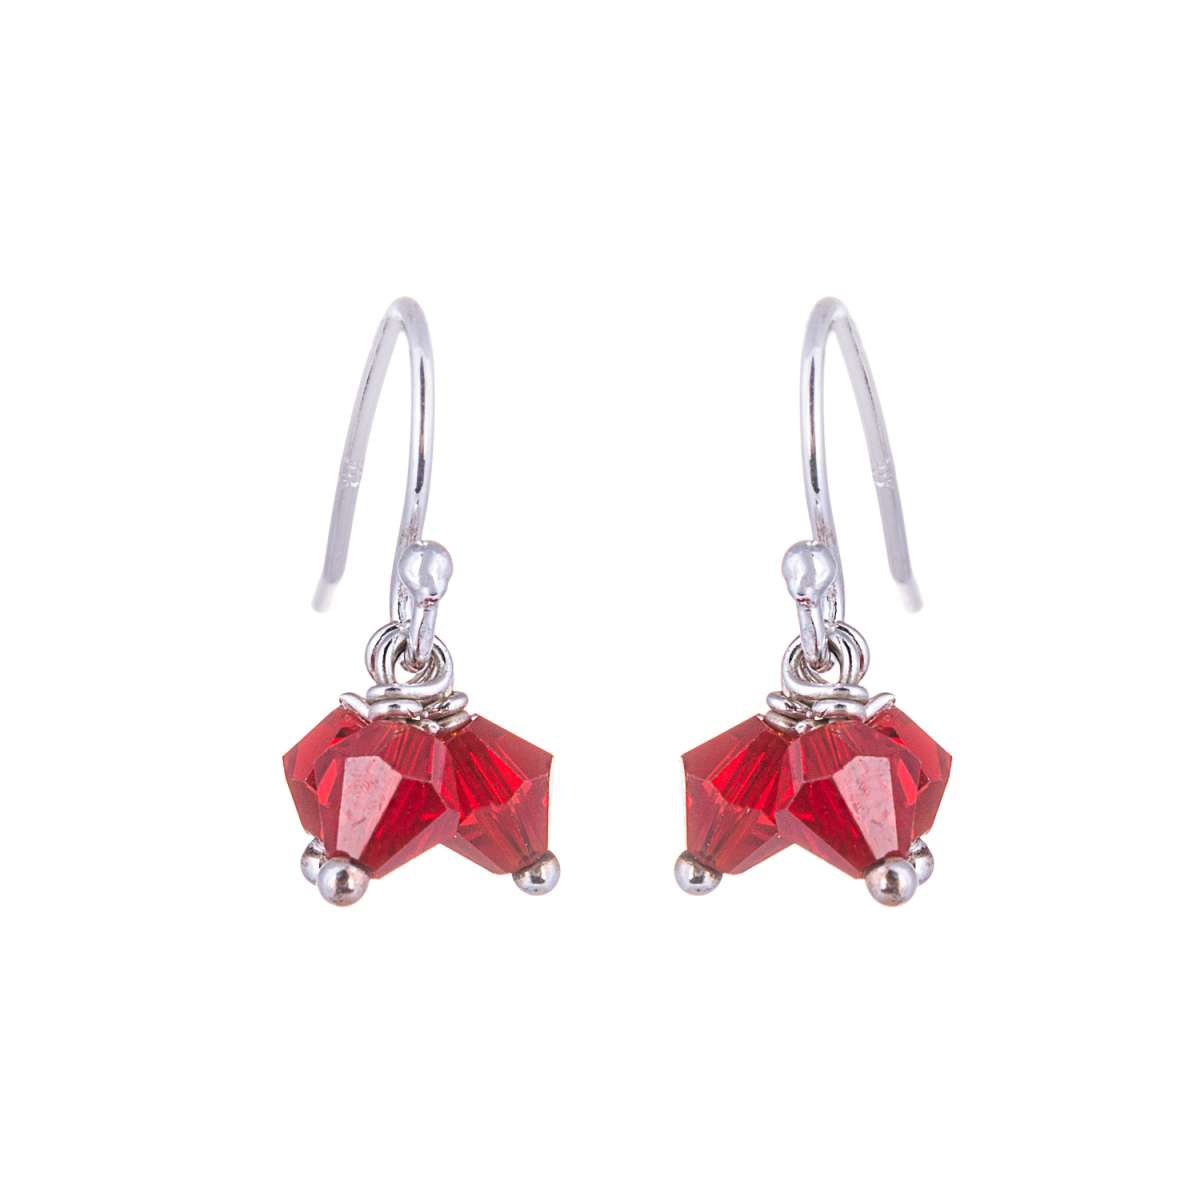 Triple Silver & Red CZ Bead Fishhook Earrings